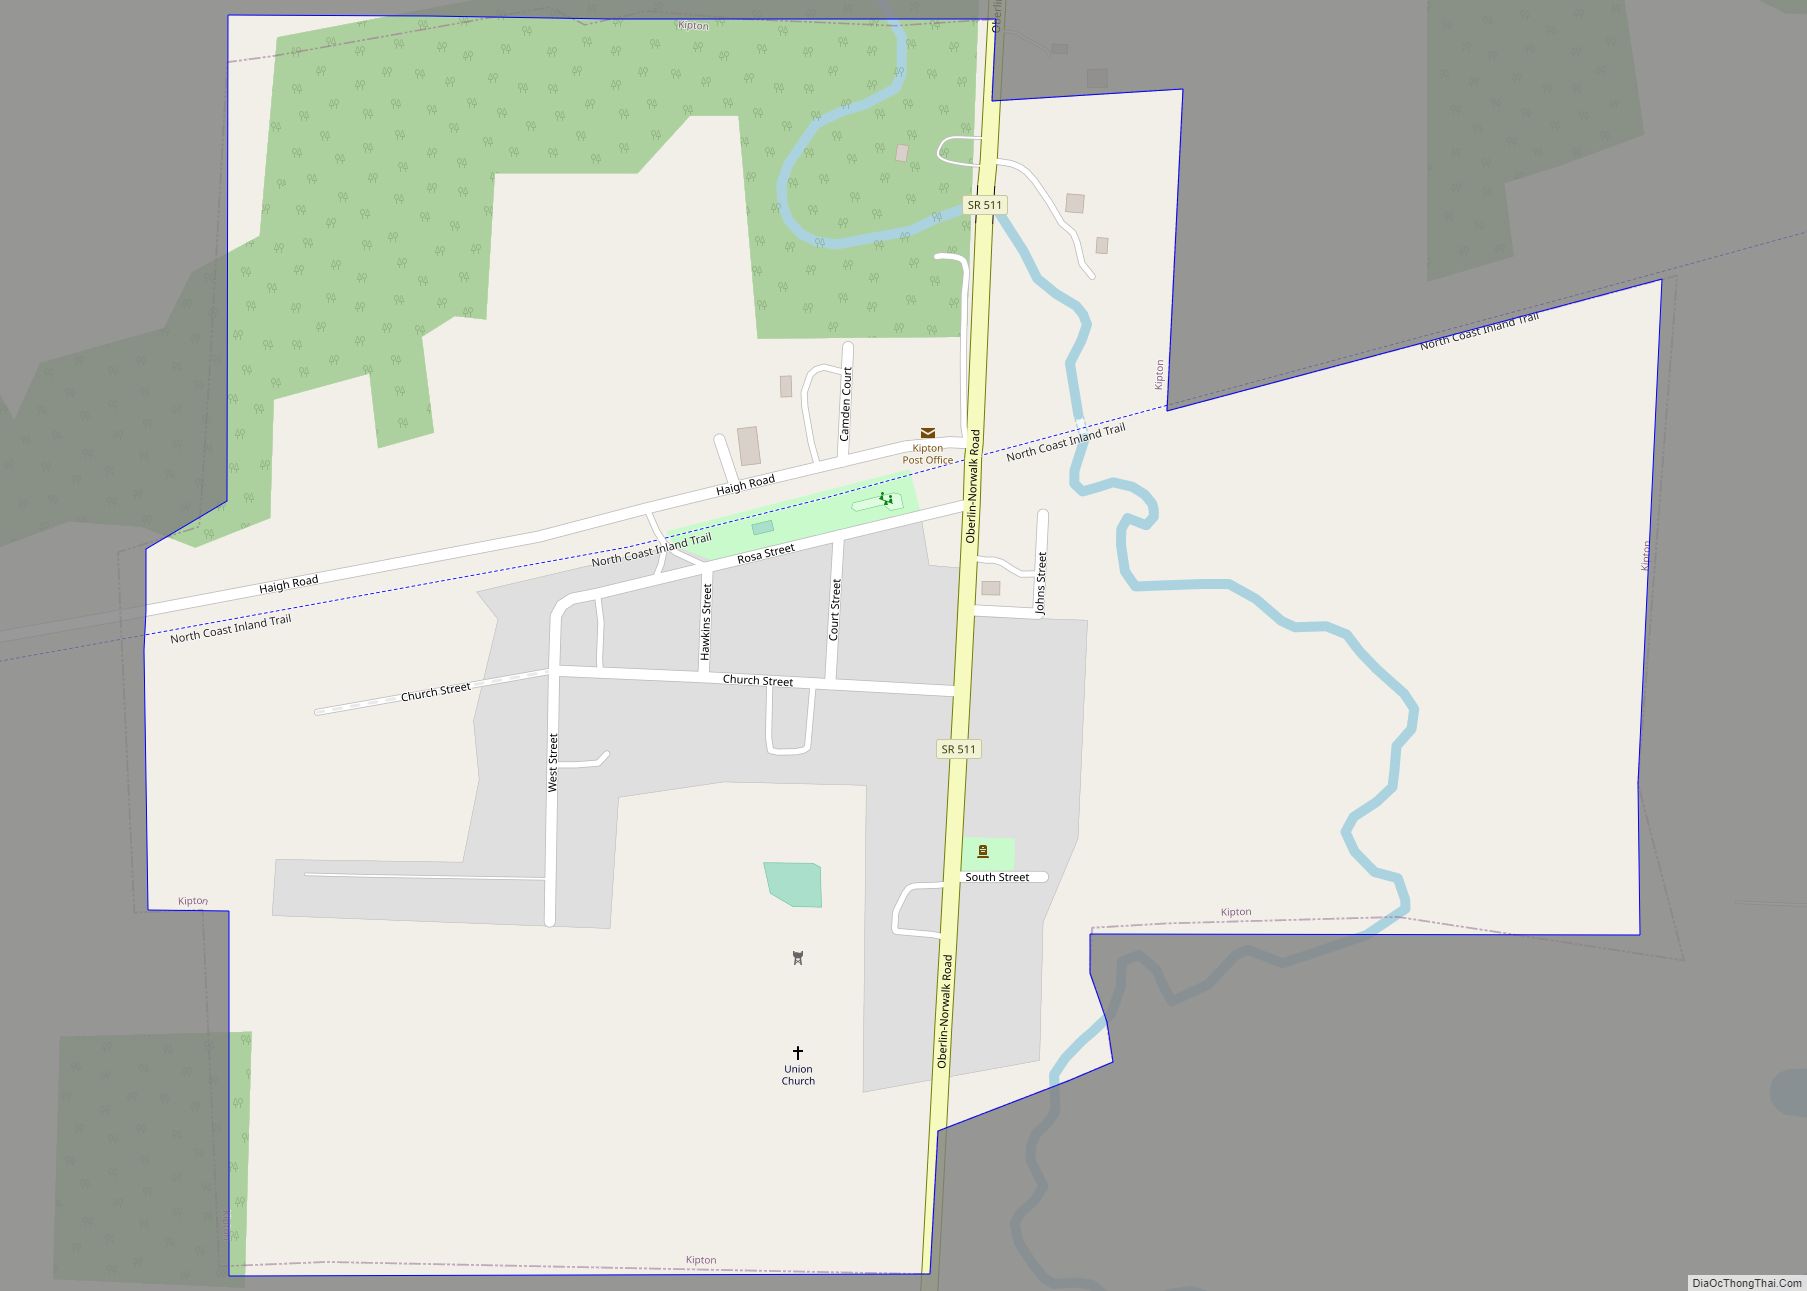 Map of Kipton village